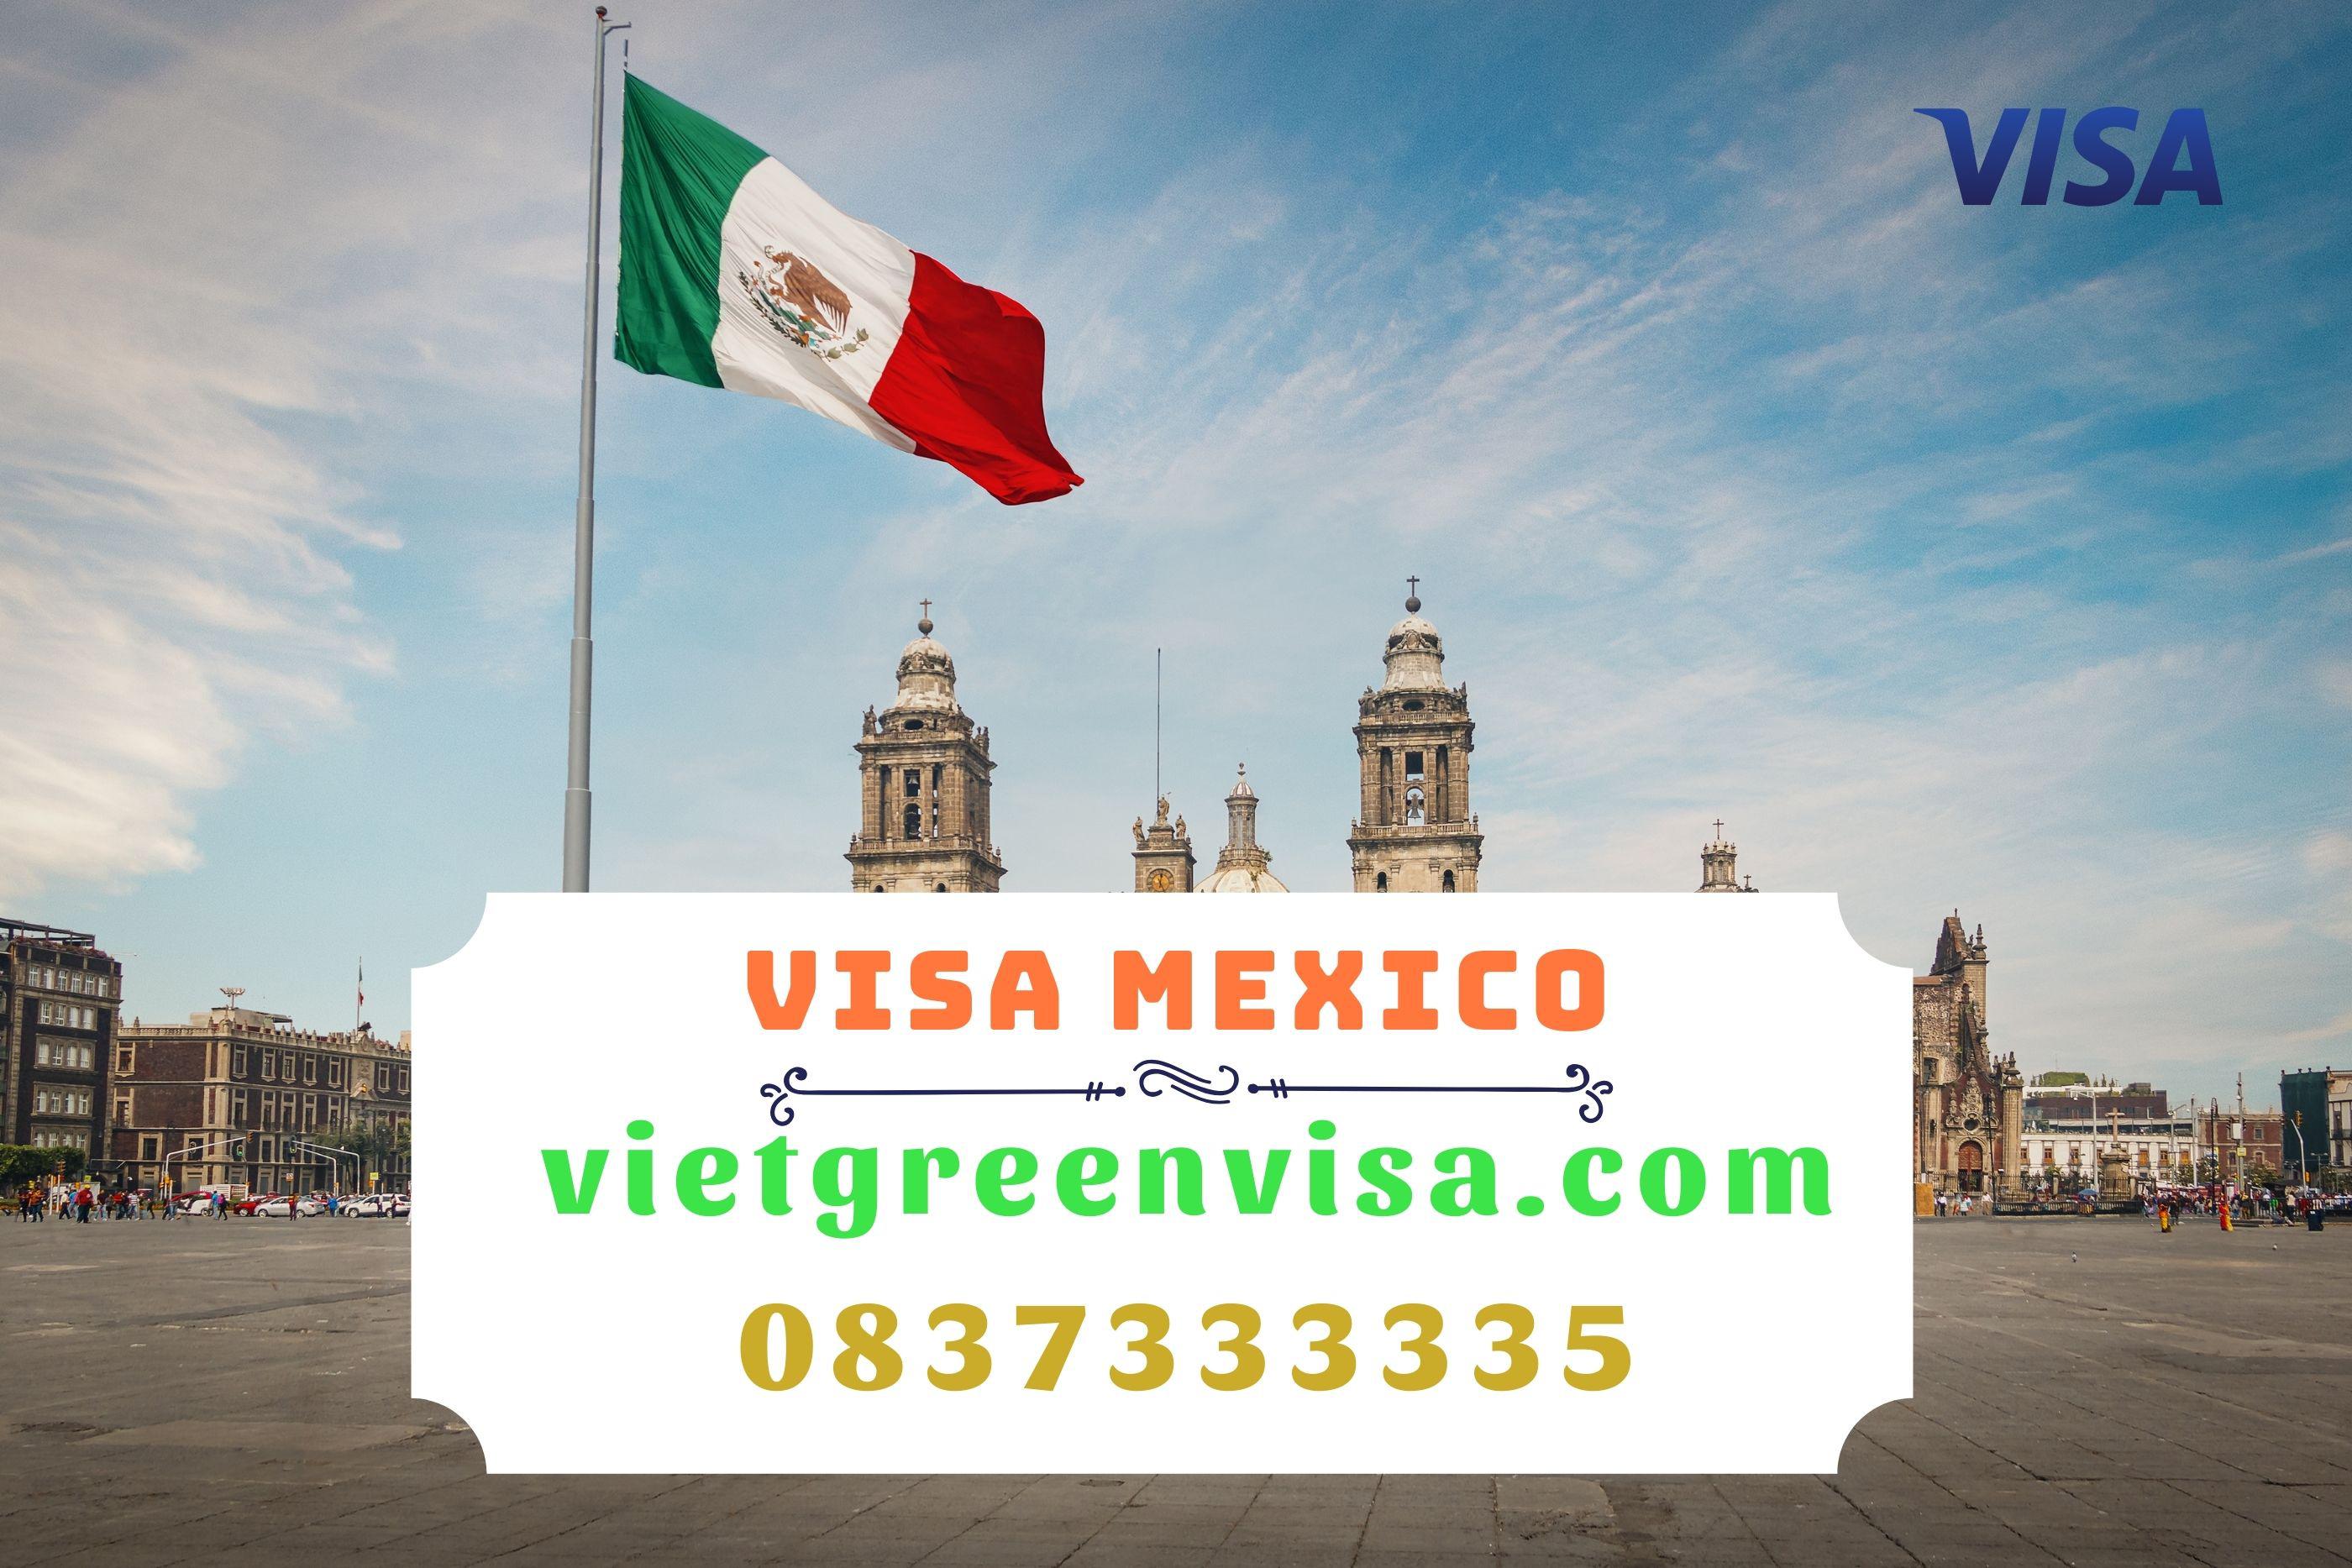 Tư vấn xin visa Mexico dễ dàng và chuyên nghiệp